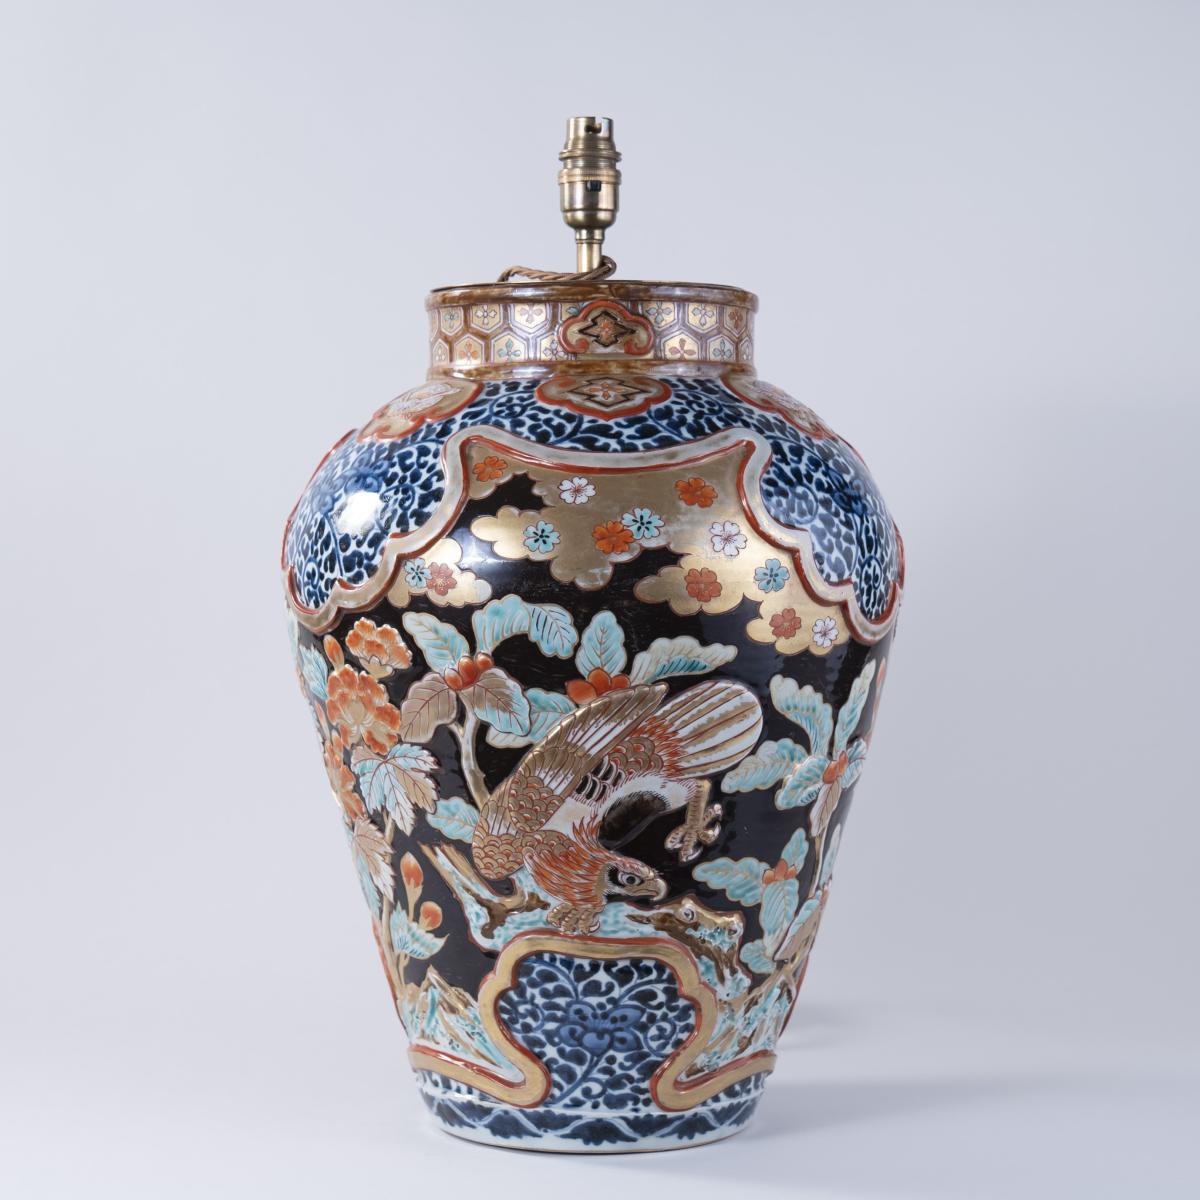 Japanese Imari Vase with raised Decoration, Lamped